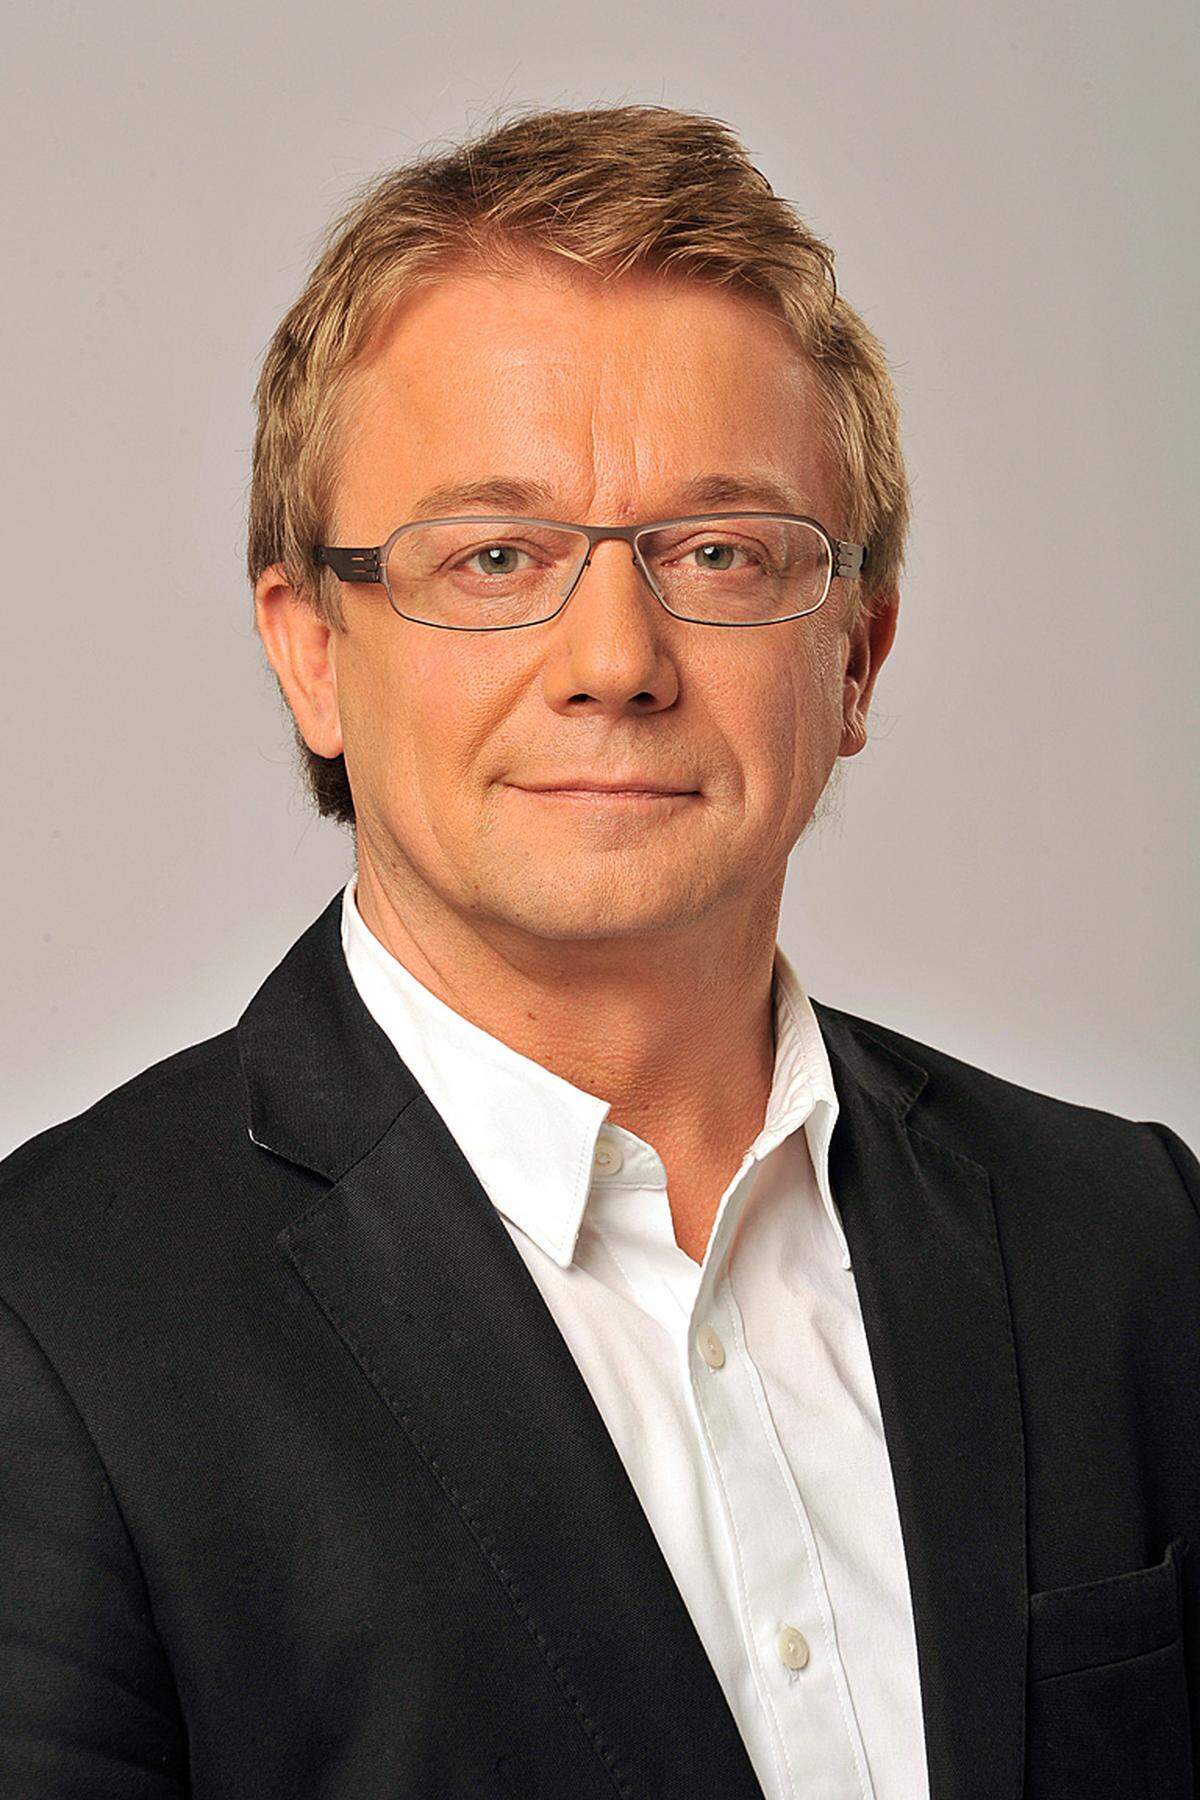 Prantner ist dem Technischen Direktor Michael Götzhaber unterstellt. Der ehemalige ORF-Techniker war lange Betriebsrat und saß bis vor Kurzem im ORF-Stiftungsrat inmitten der roten Reichshälfte.